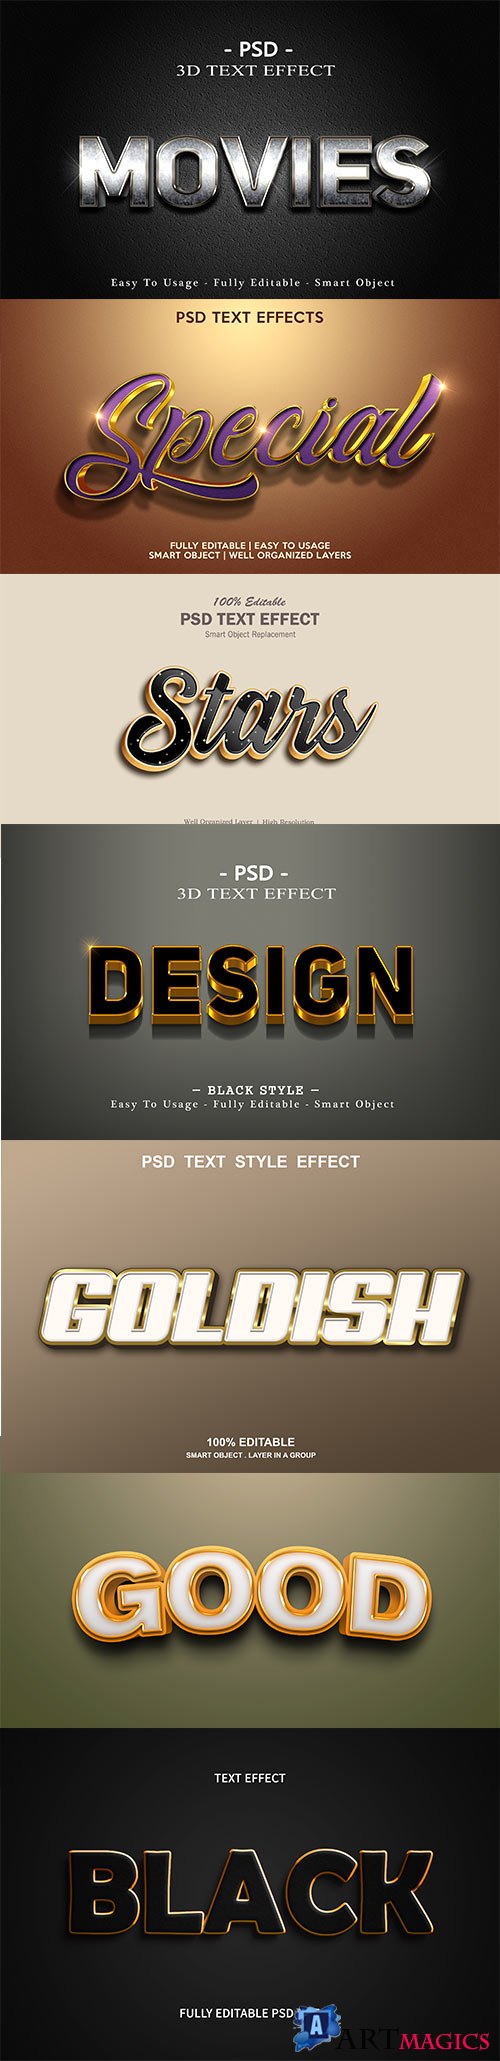 Psd text effect set vol 72